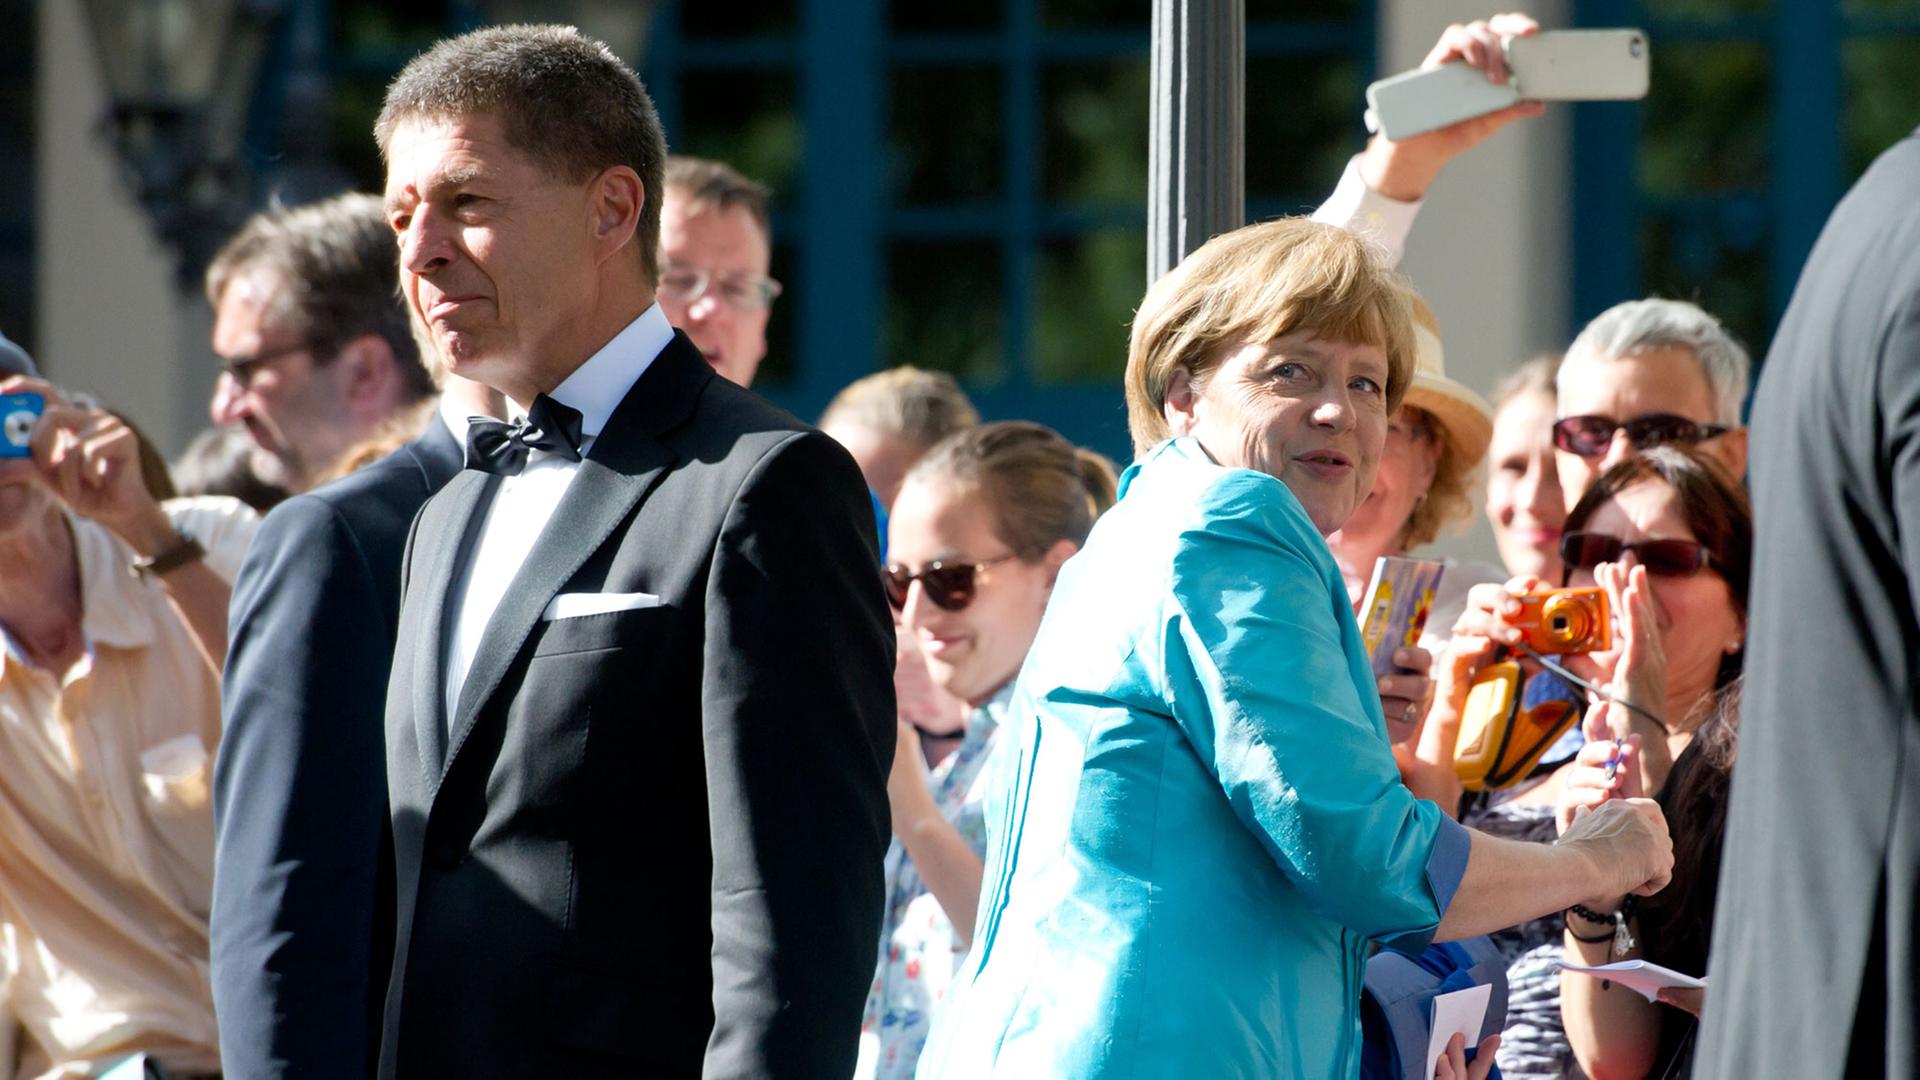 Bundeskanzlerin Angela Merkel (CDU) und Ehemann Joachim Sauer am 25.07.2015 in der Pause während der Eröffnung der 104. Bayreuther Festspiele in Bayreuth (Bayern). Die Richard-Wagner-Festspiele dauern bis zum 28. August.